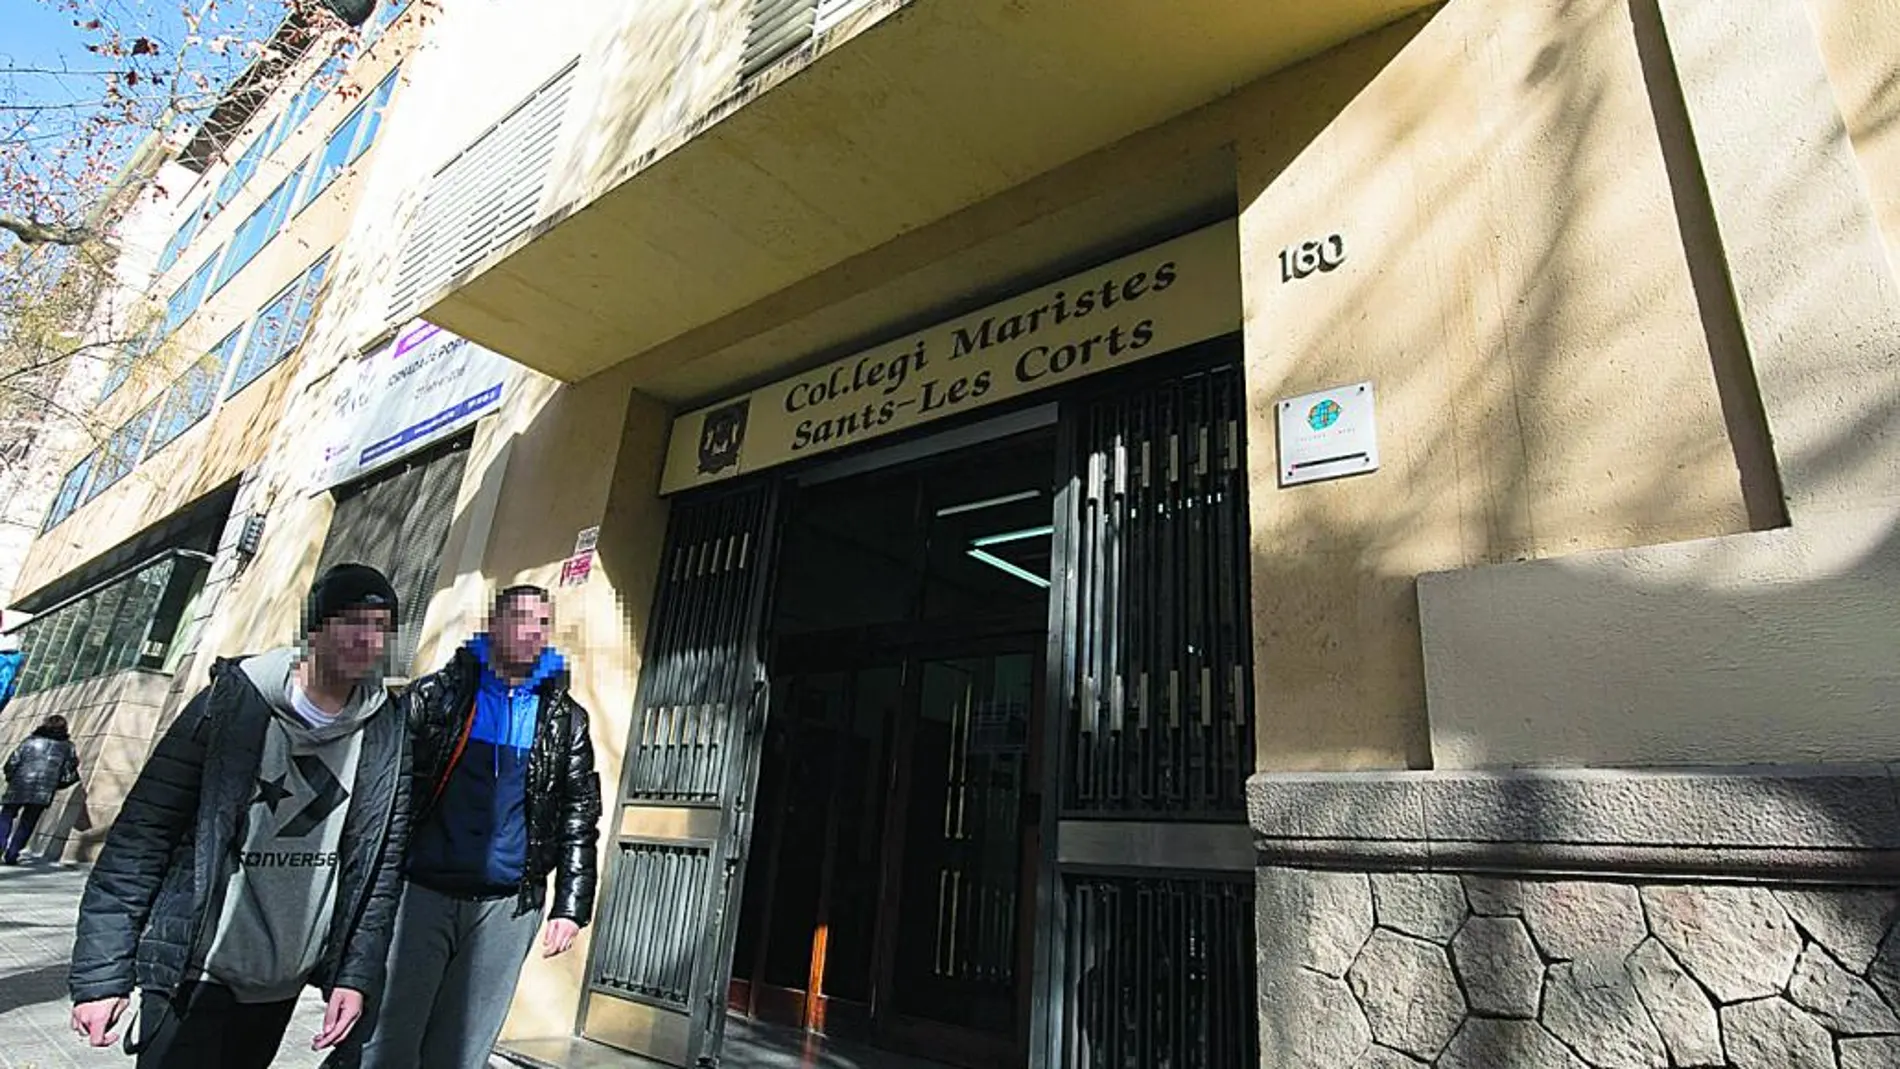 Los presuntos abusos del profesor de gimnasia tuvieron lugar en el colegio Maristas Sants-Les Corts de Barcelona. Ayer aparecieron pintadas en el centro